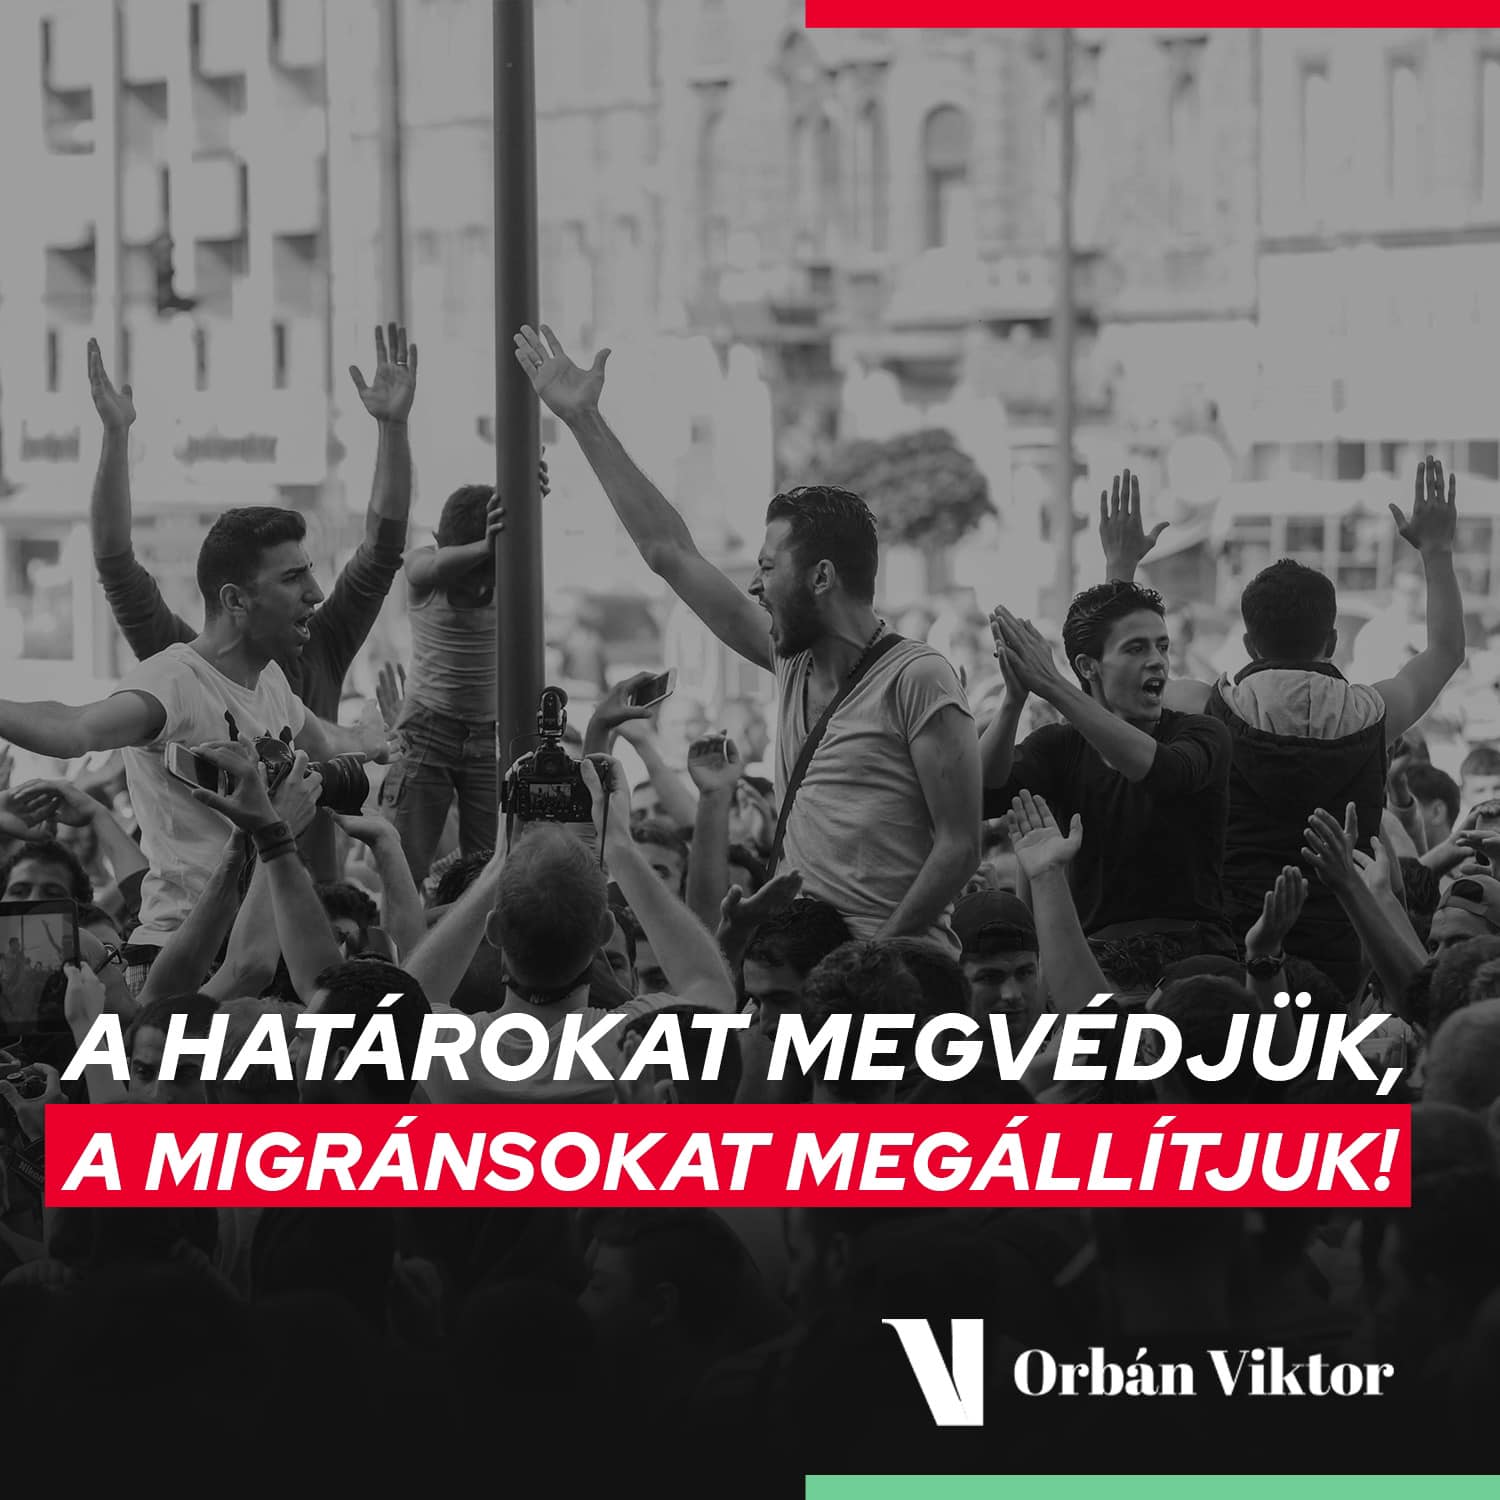 Orbán Viktor Facebook